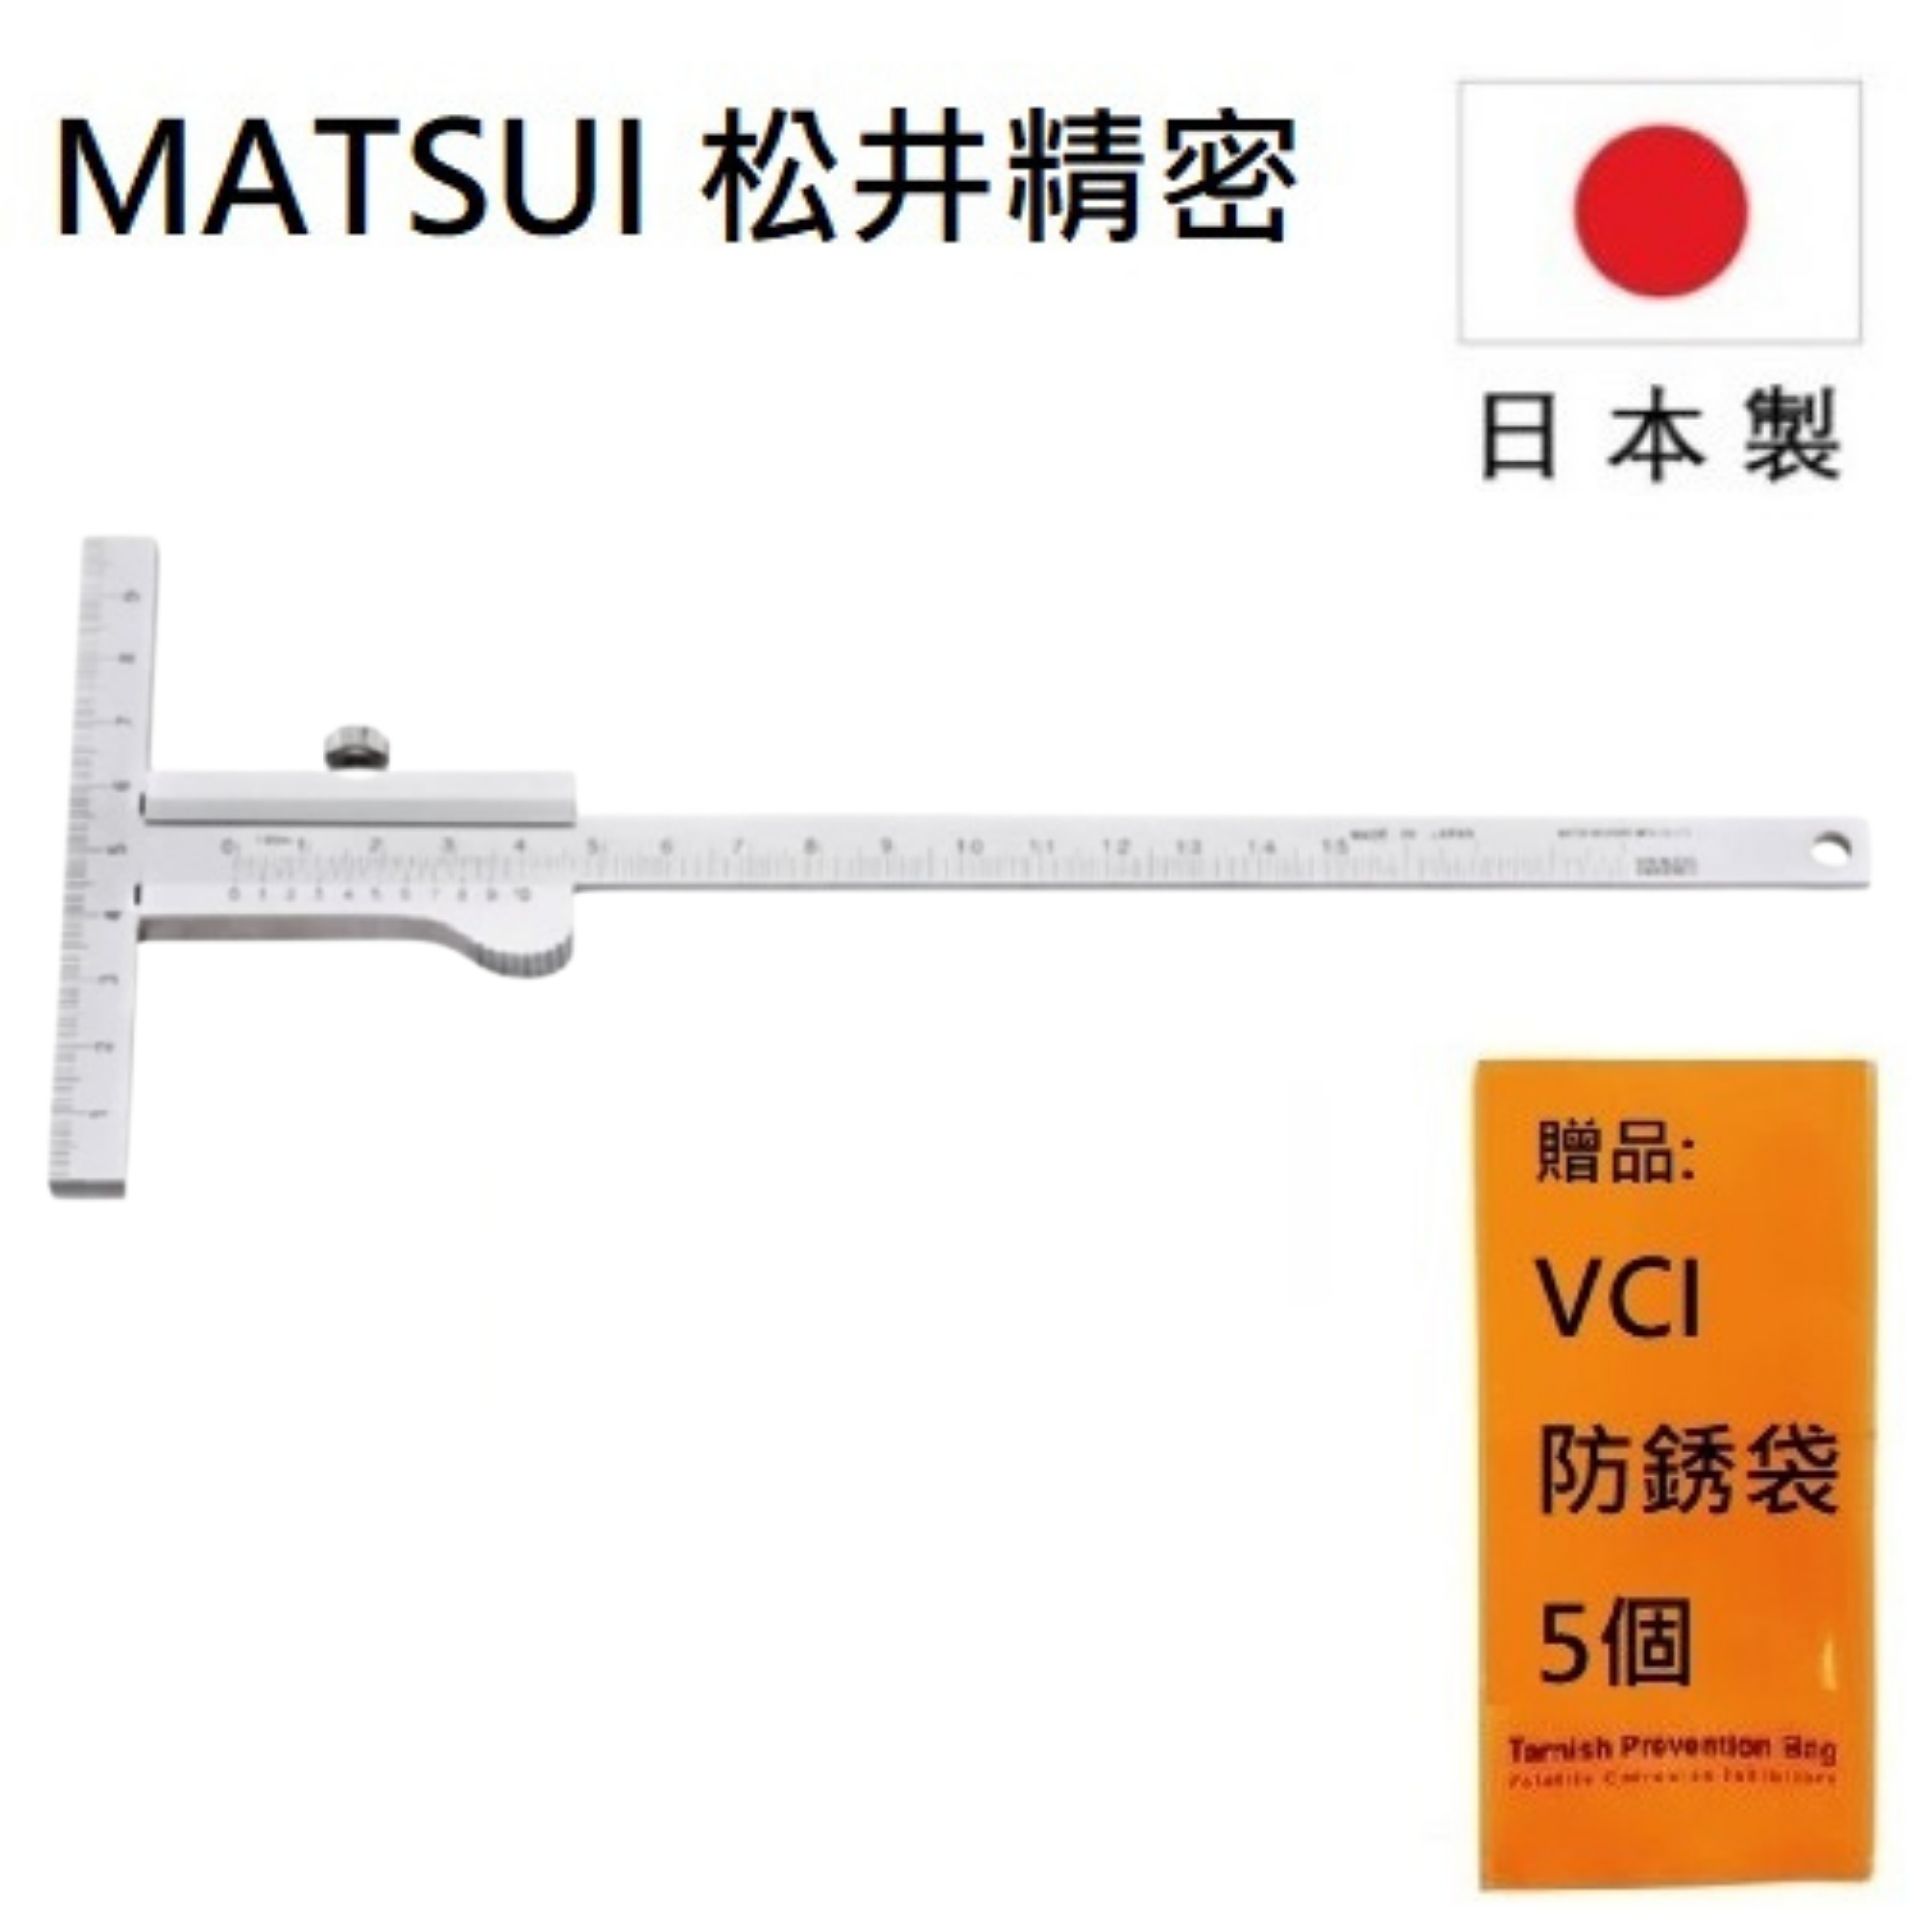 【MATSUI 松井精密】T型游標卡尺 150mm(先端附刻度), KM-15 高精度測量工具